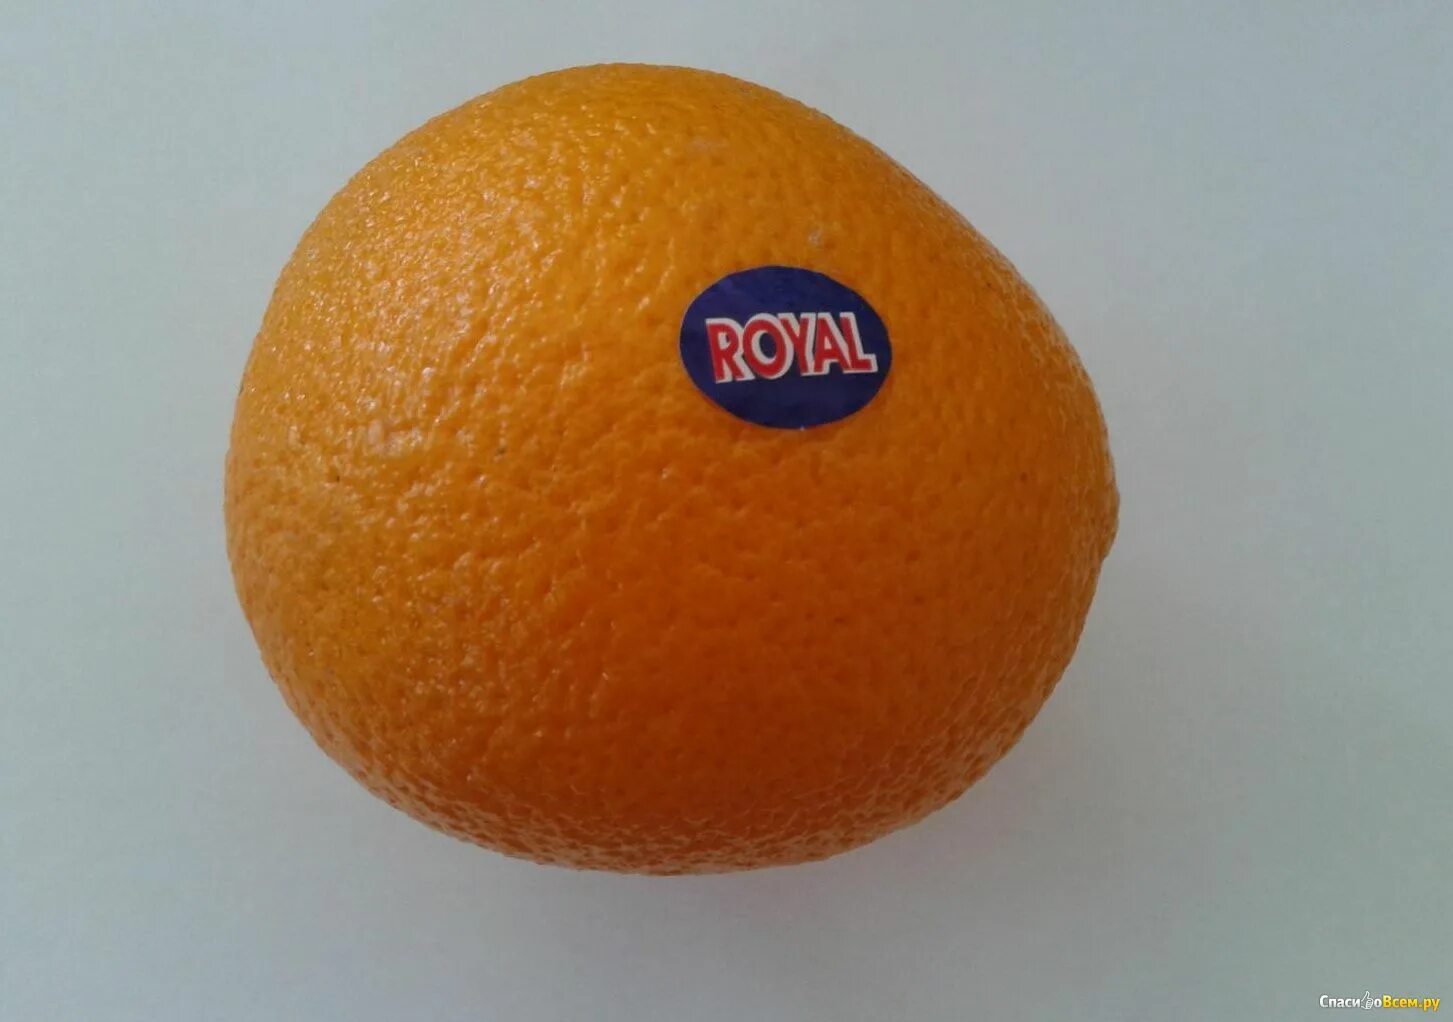 Royal страна производитель. Апельсины Royal. Королевский апельсин. Мячи в виде апельсинов. Оранжевые круглые витаминку.